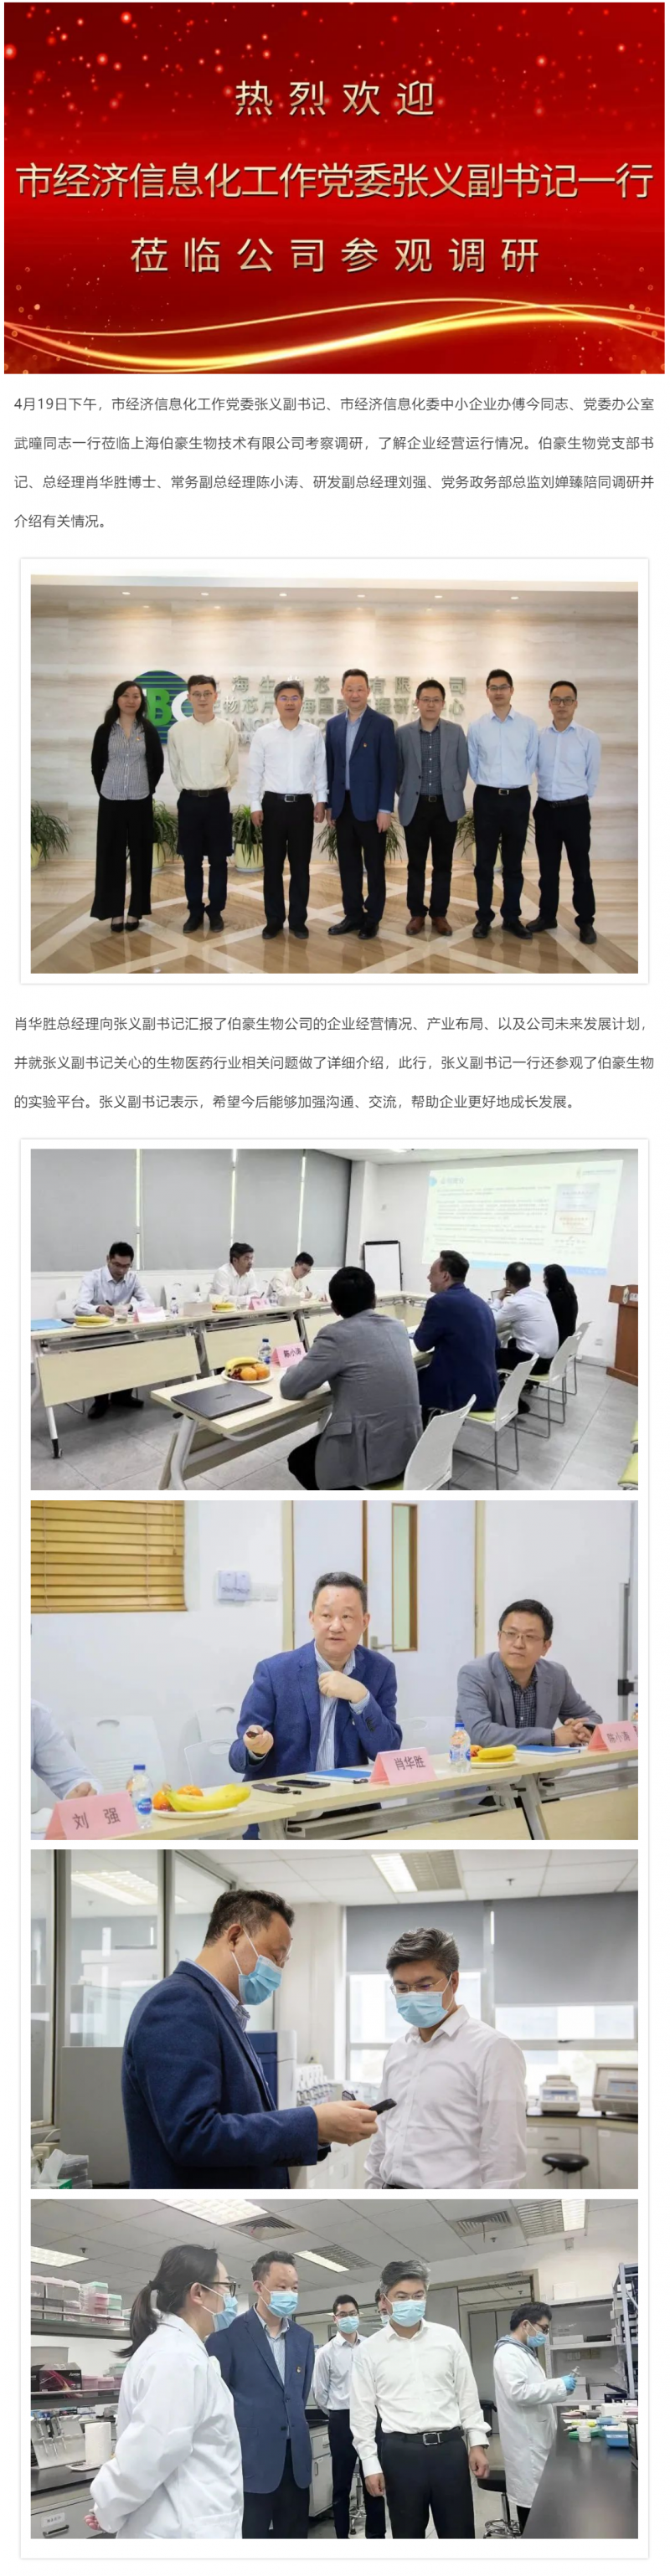 上海市经济信息化工作党委张义副书记调研QY球友会生物